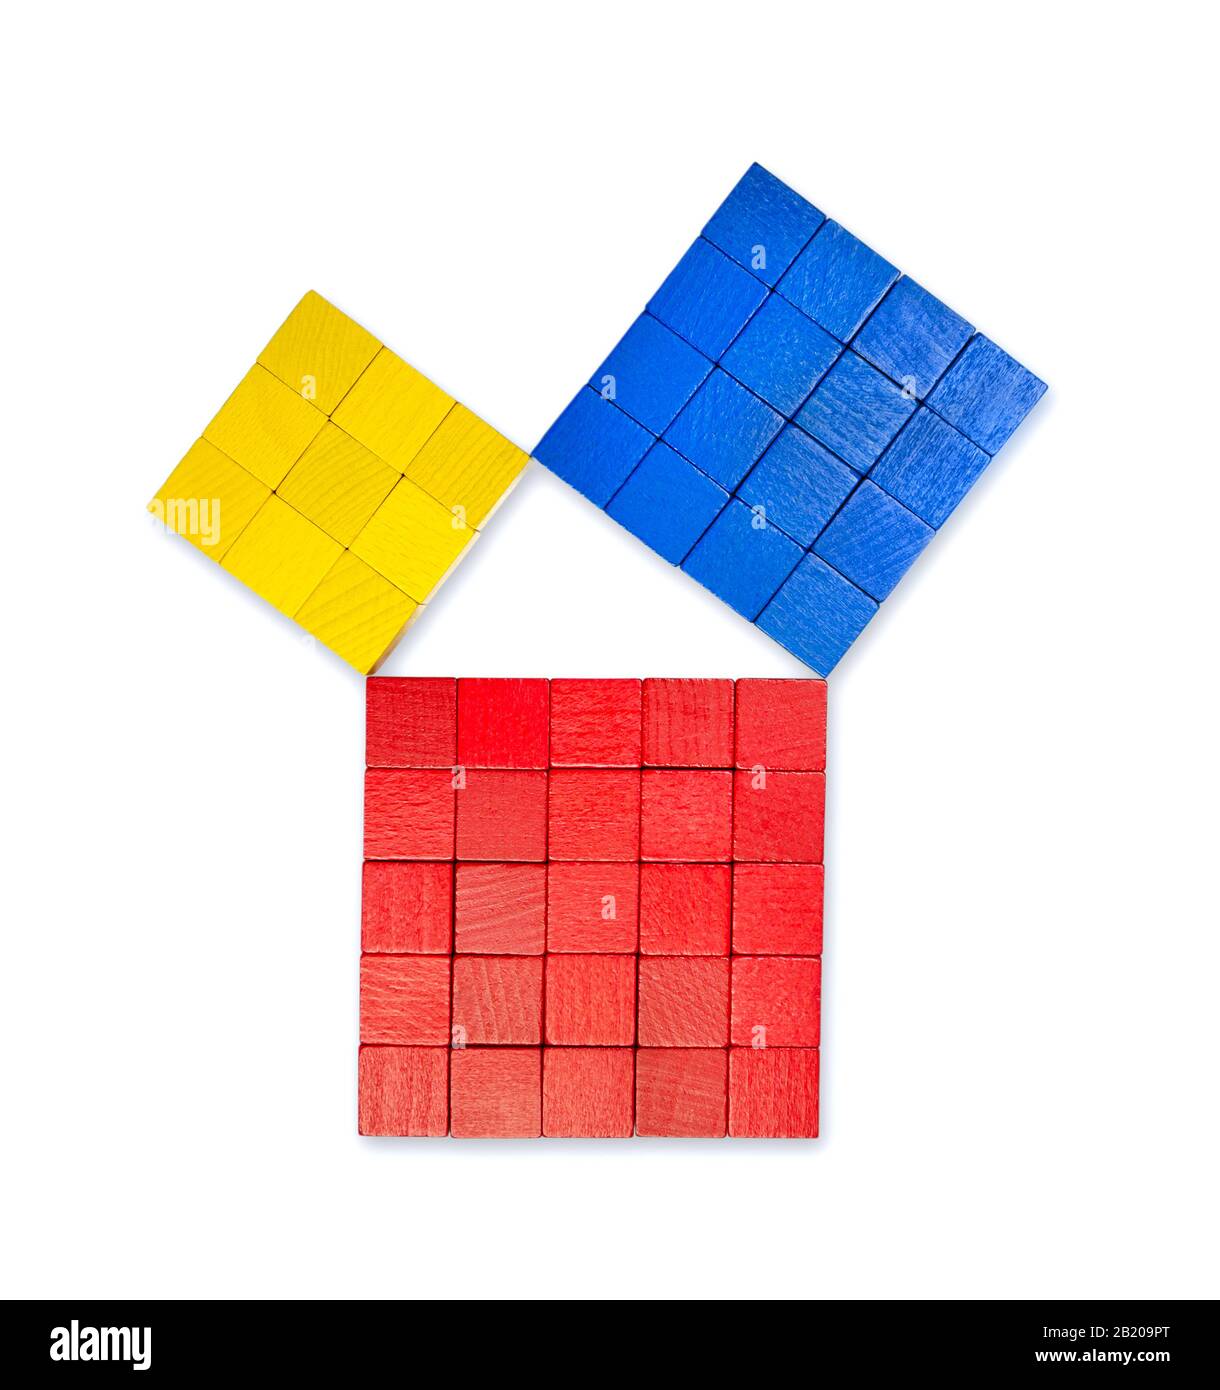 Teorema pitagórico mostrado con coloridos cubos de madera, desde arriba. Teorema de Pitágoras. Relación de lados de un triángulo derecho. Foto de stock